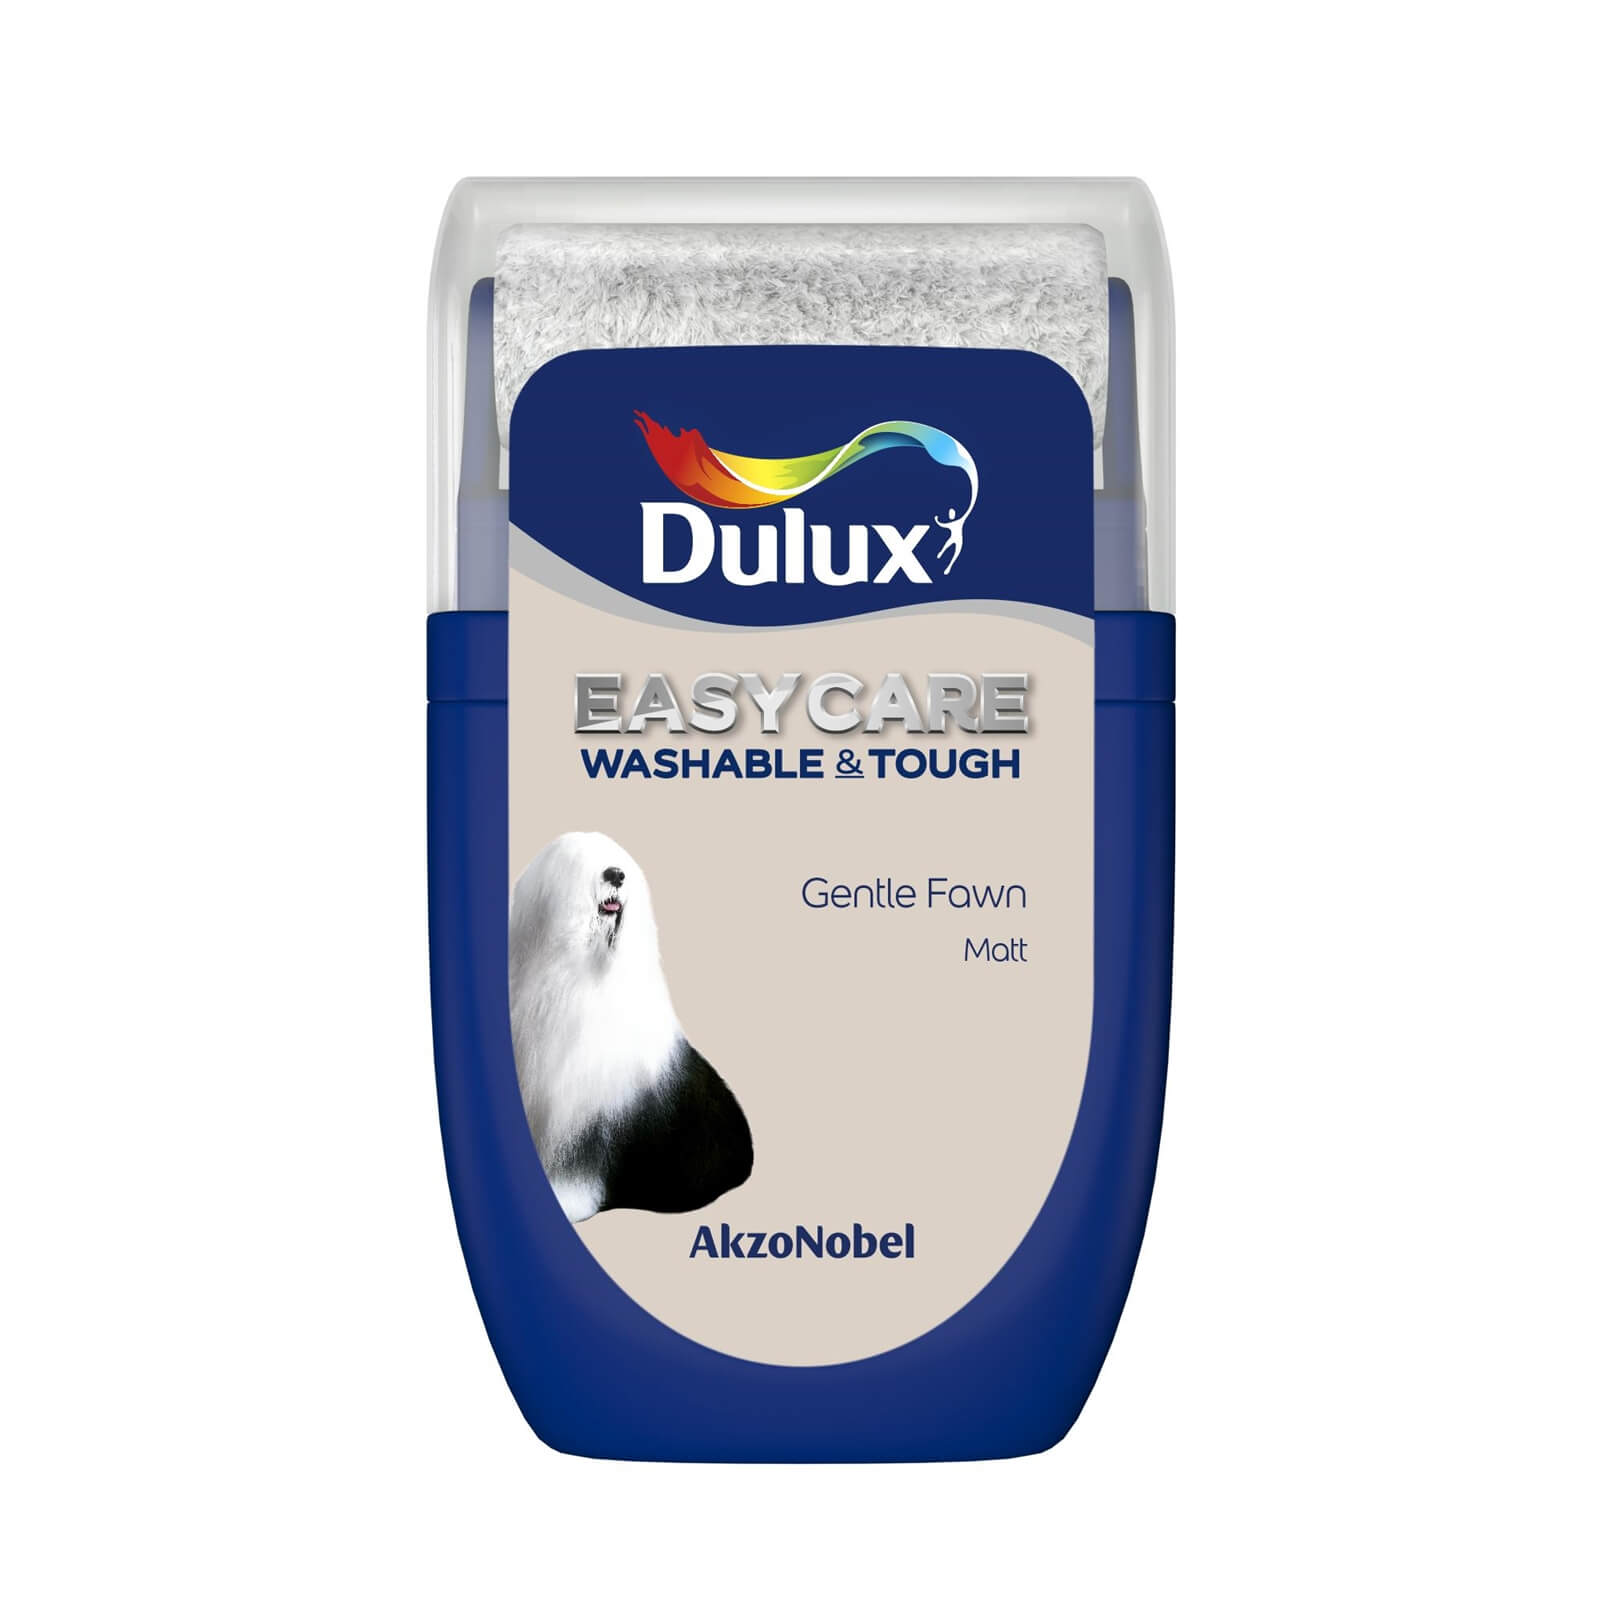 Dulux Easycare Washable & Tough Matt Paint Gentle Fawn - Tester 30ml